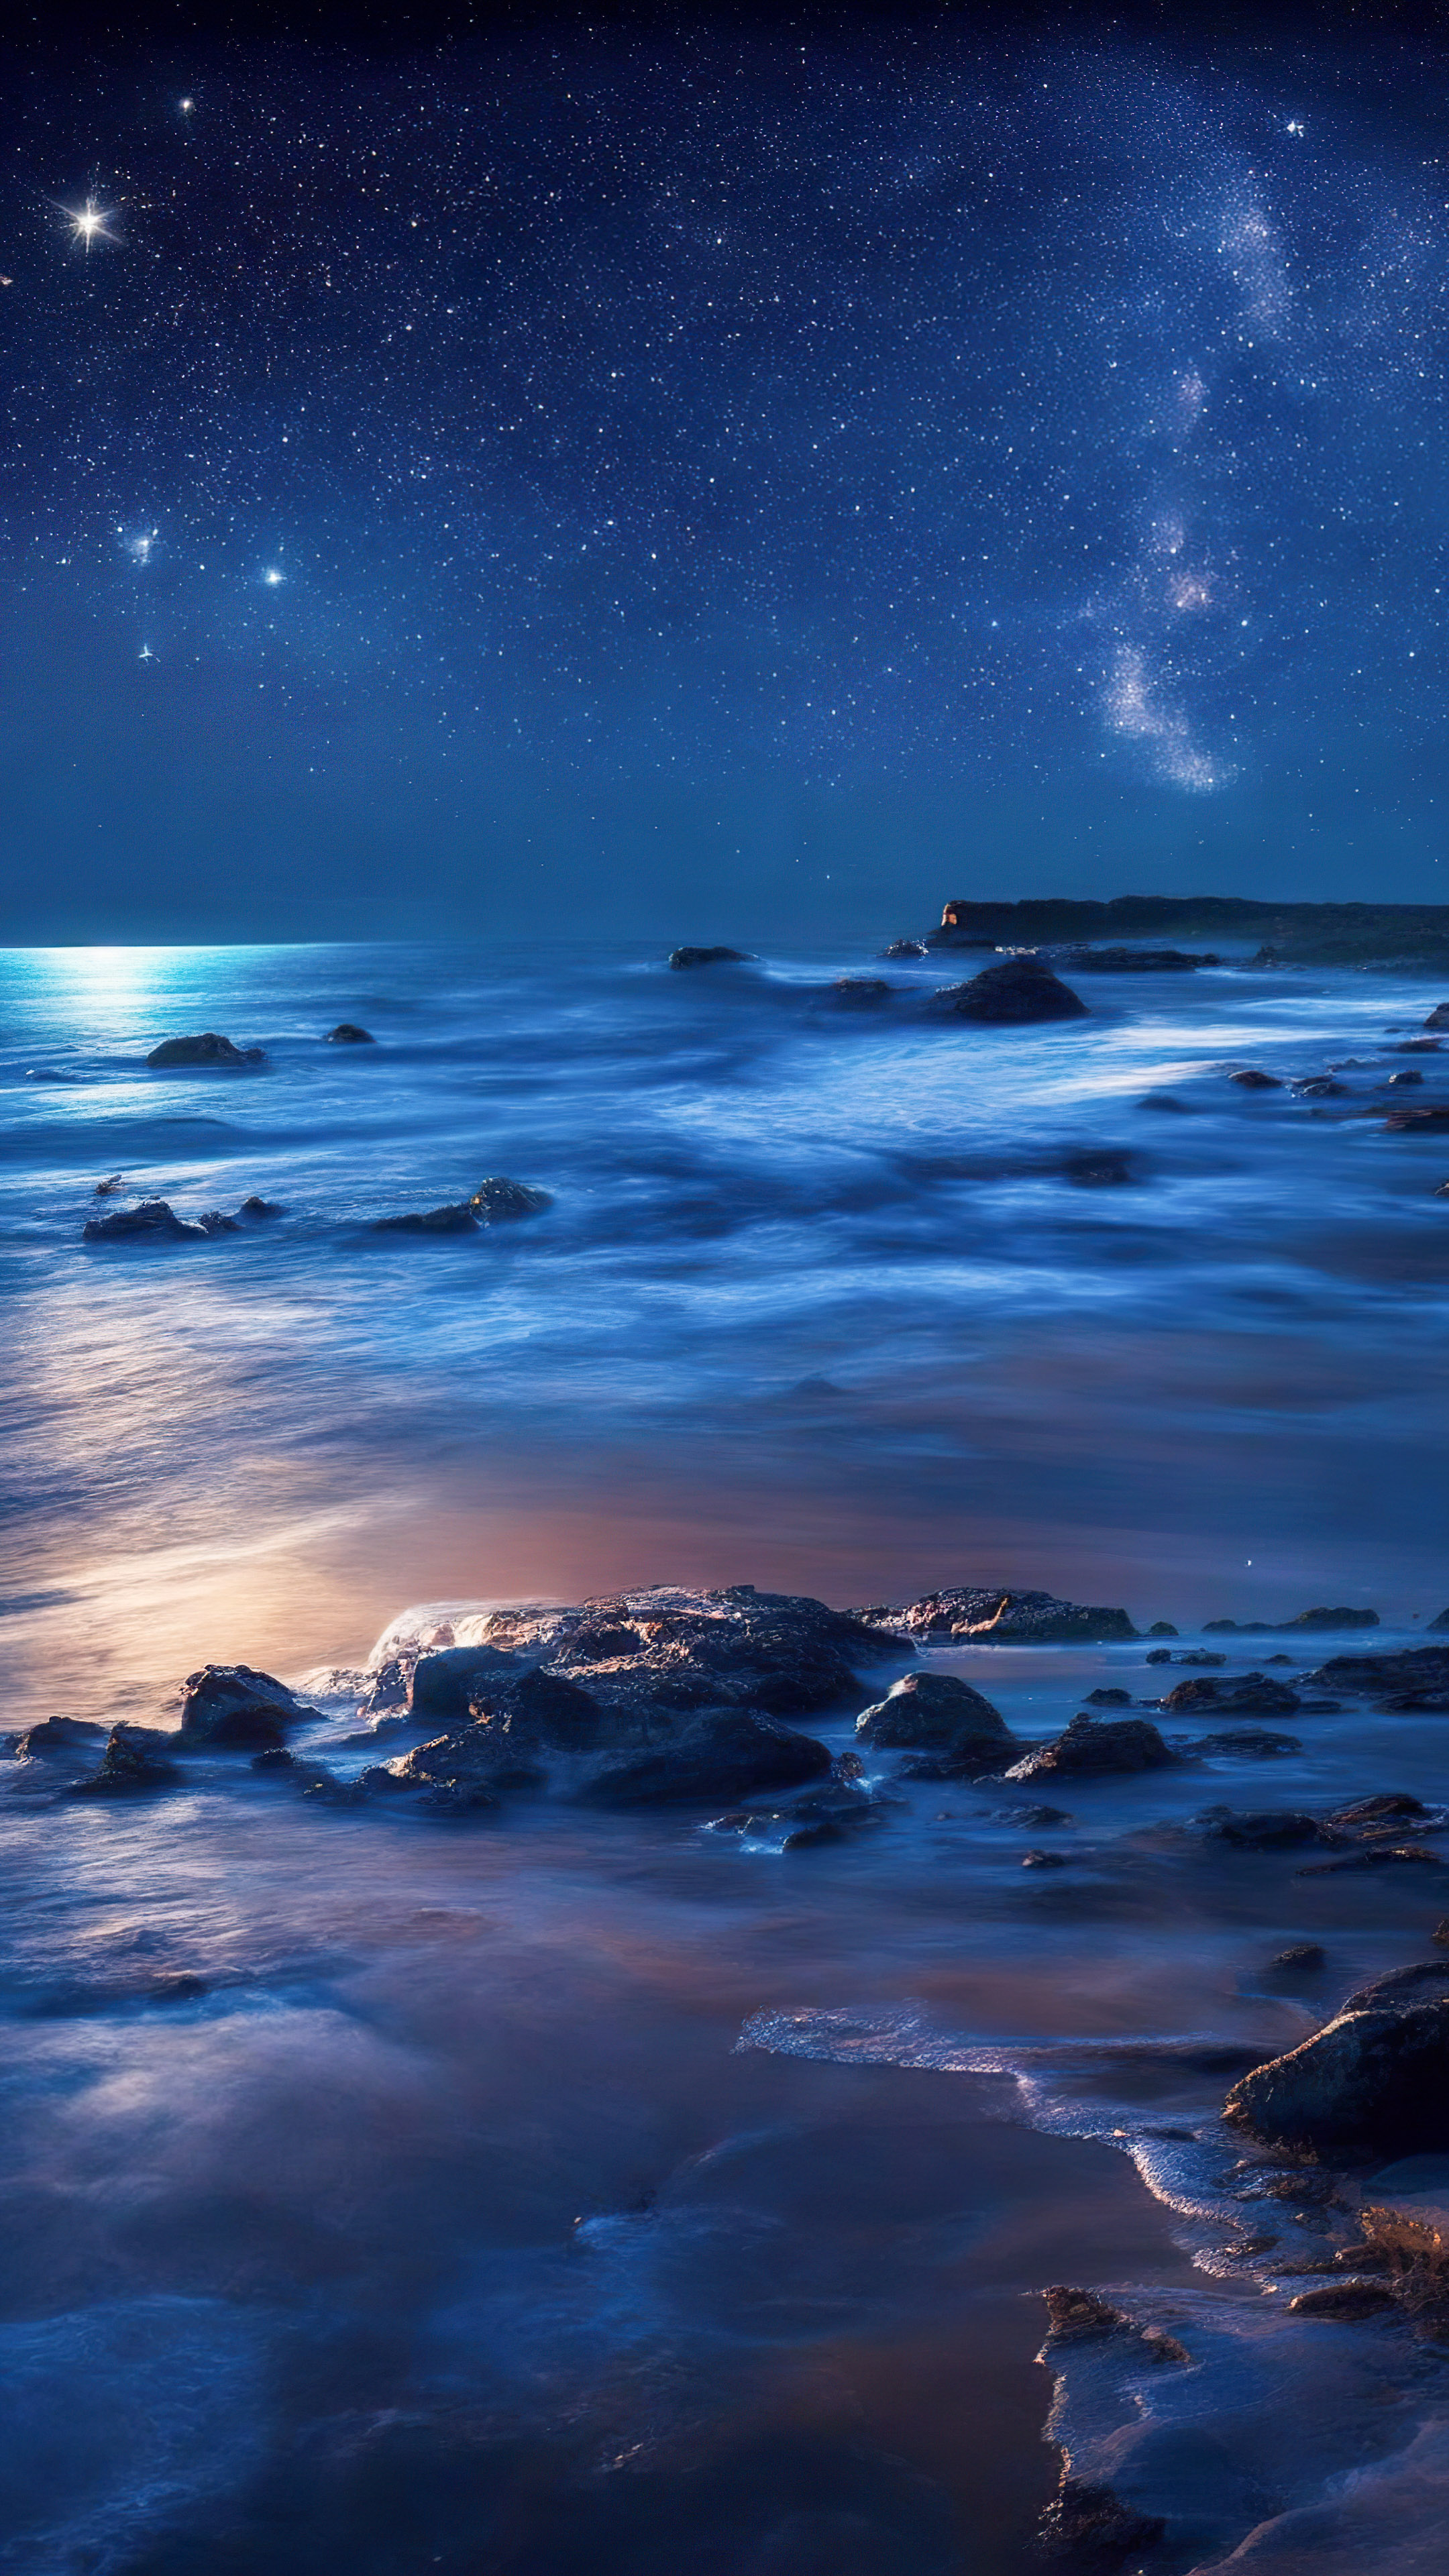 Vivez la sérénité de notre fond d'écran nocturne océanique, présentant une plage isolée la nuit où les vagues caressent le rivage sous une couverture d'étoiles scintillantes.